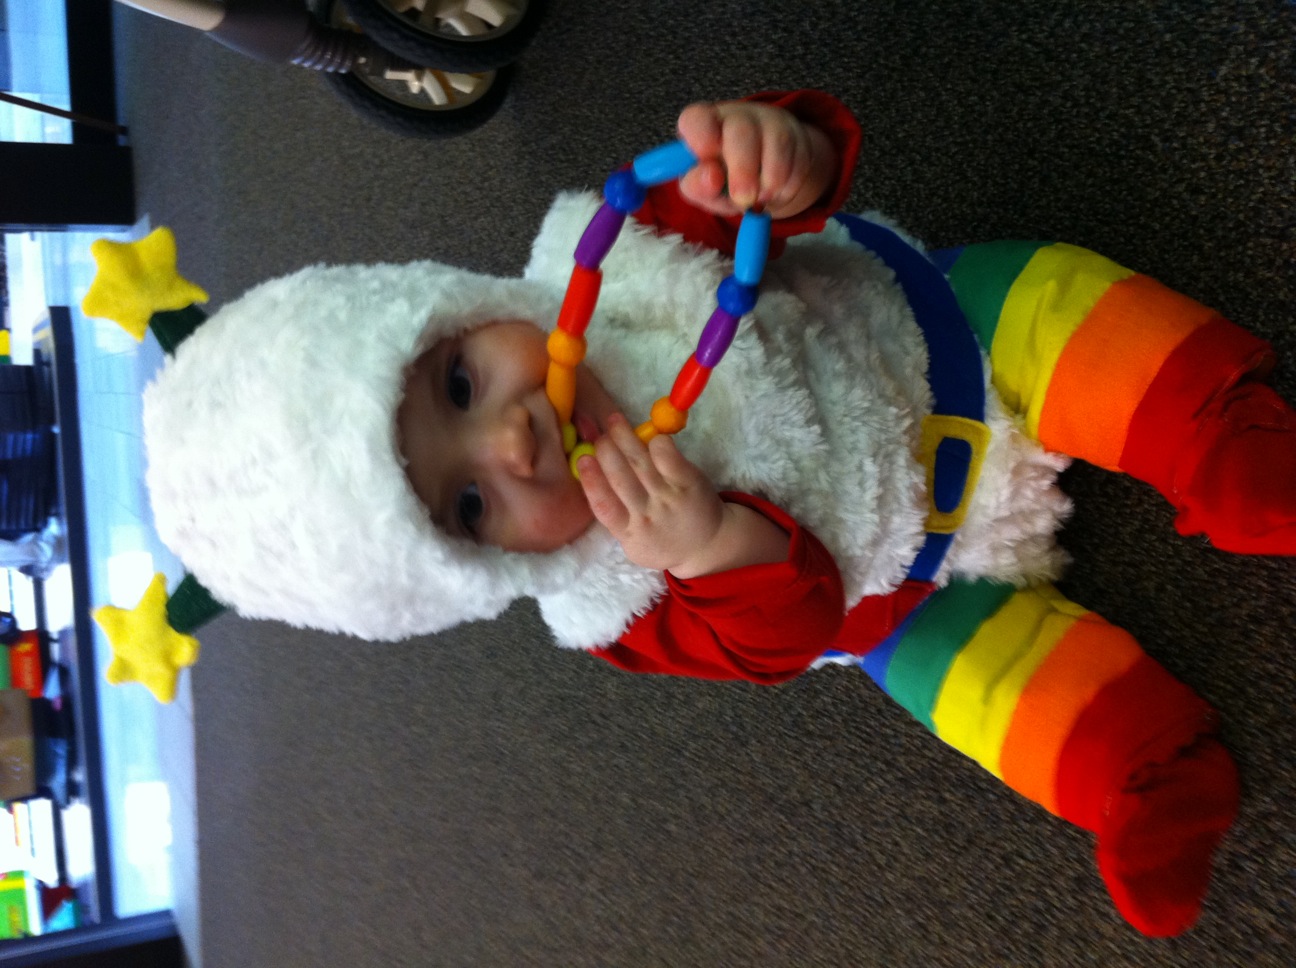 Toddler Rainbow Brite Sprite Costume